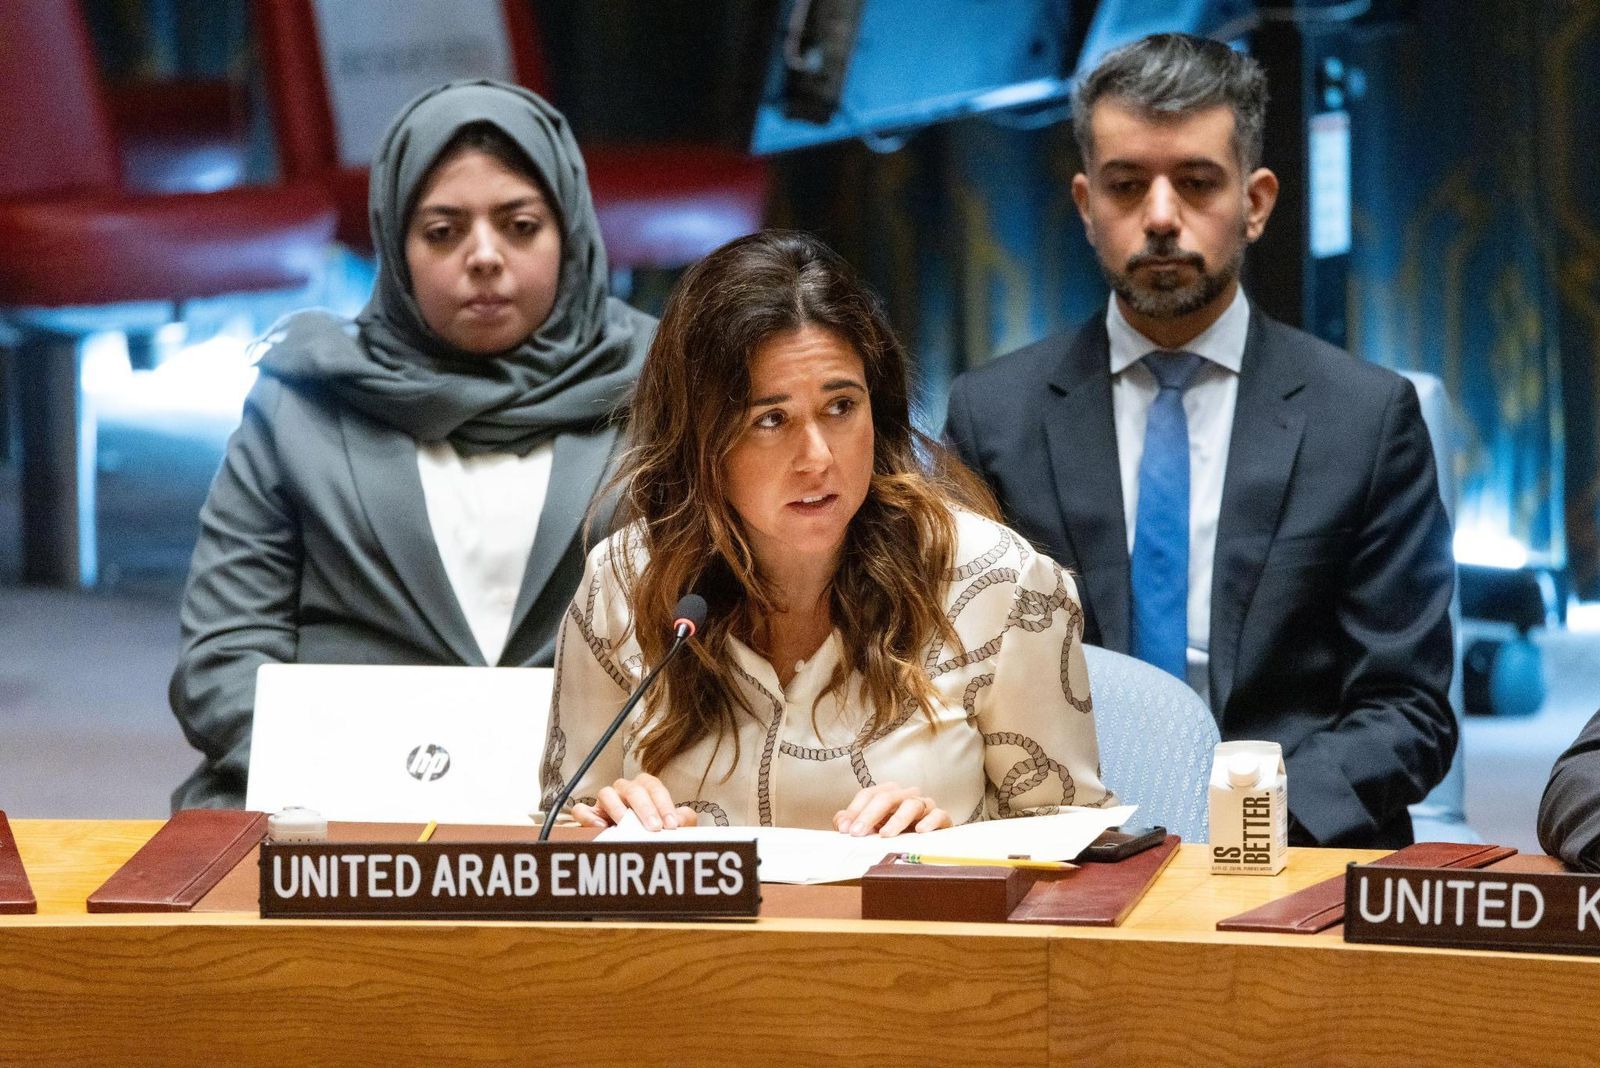 الإمارات ترحب بالحفاظ على استقلالية عمل قوة الأمم المتحدة المؤقتة في لبنان